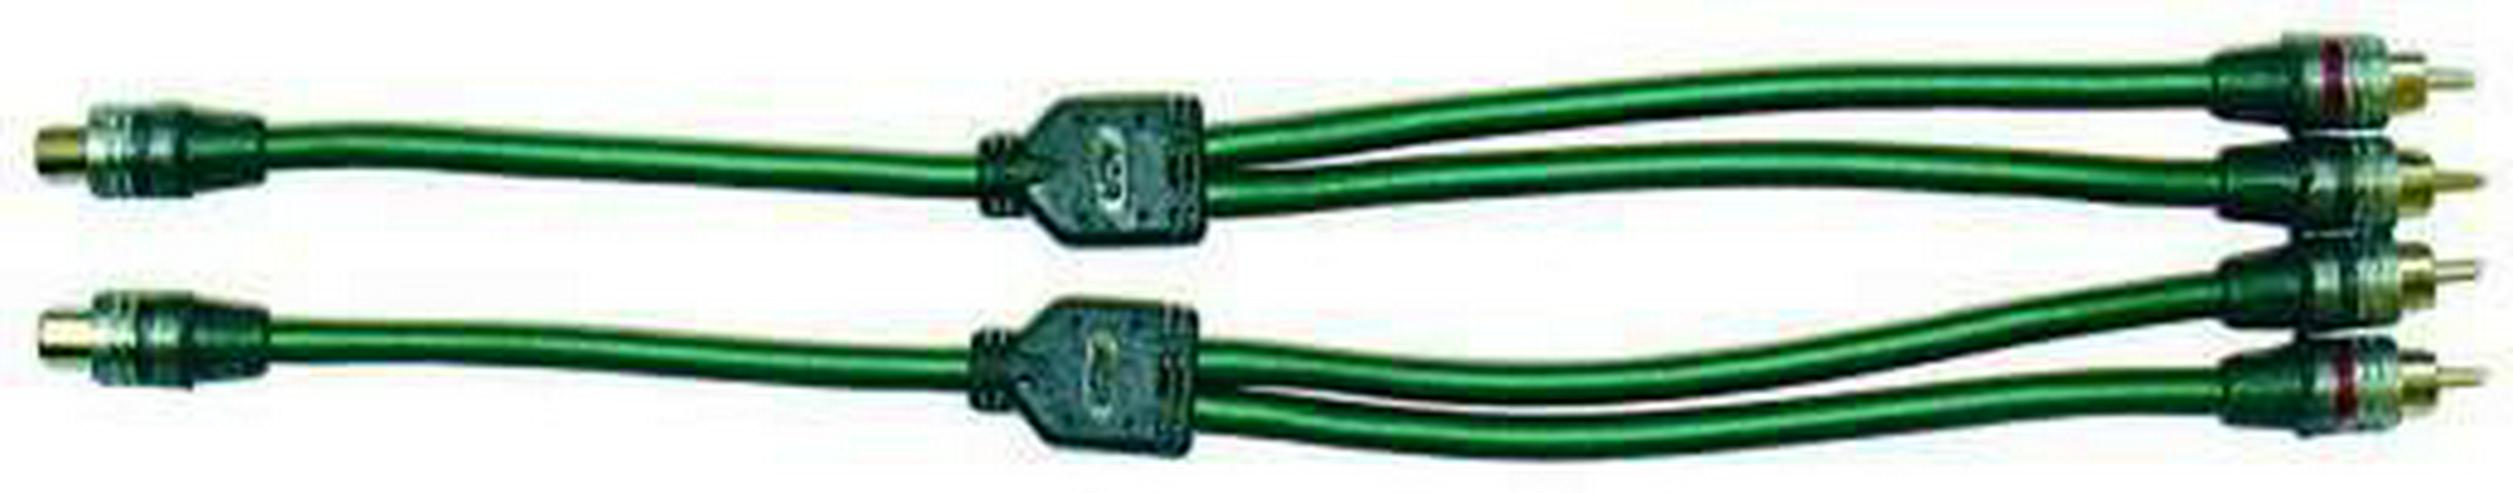 ACR HKAB03YM Cinch Kabel 5mm 2 fach - Lautsprecher, Subwoofer & Verstärker - Bild 1